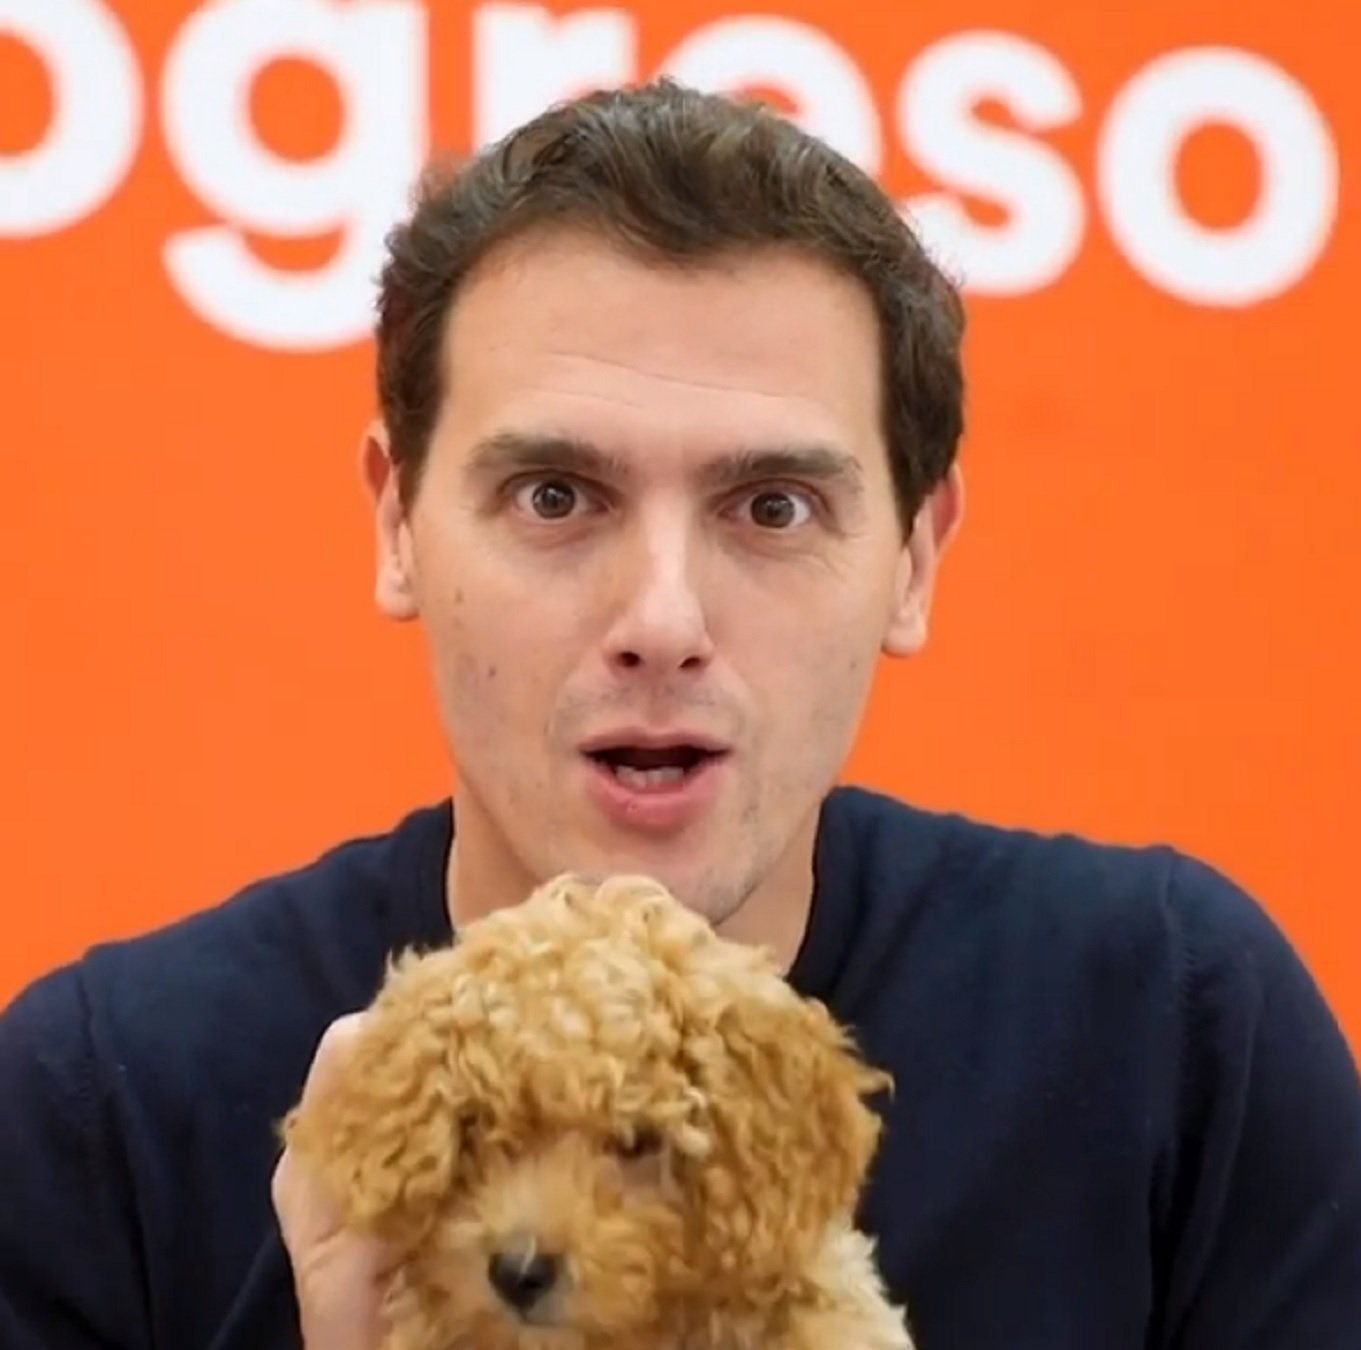 Desesperat vídeo de Rivera ensumant un gos: "Huele a leche" i twitter explota